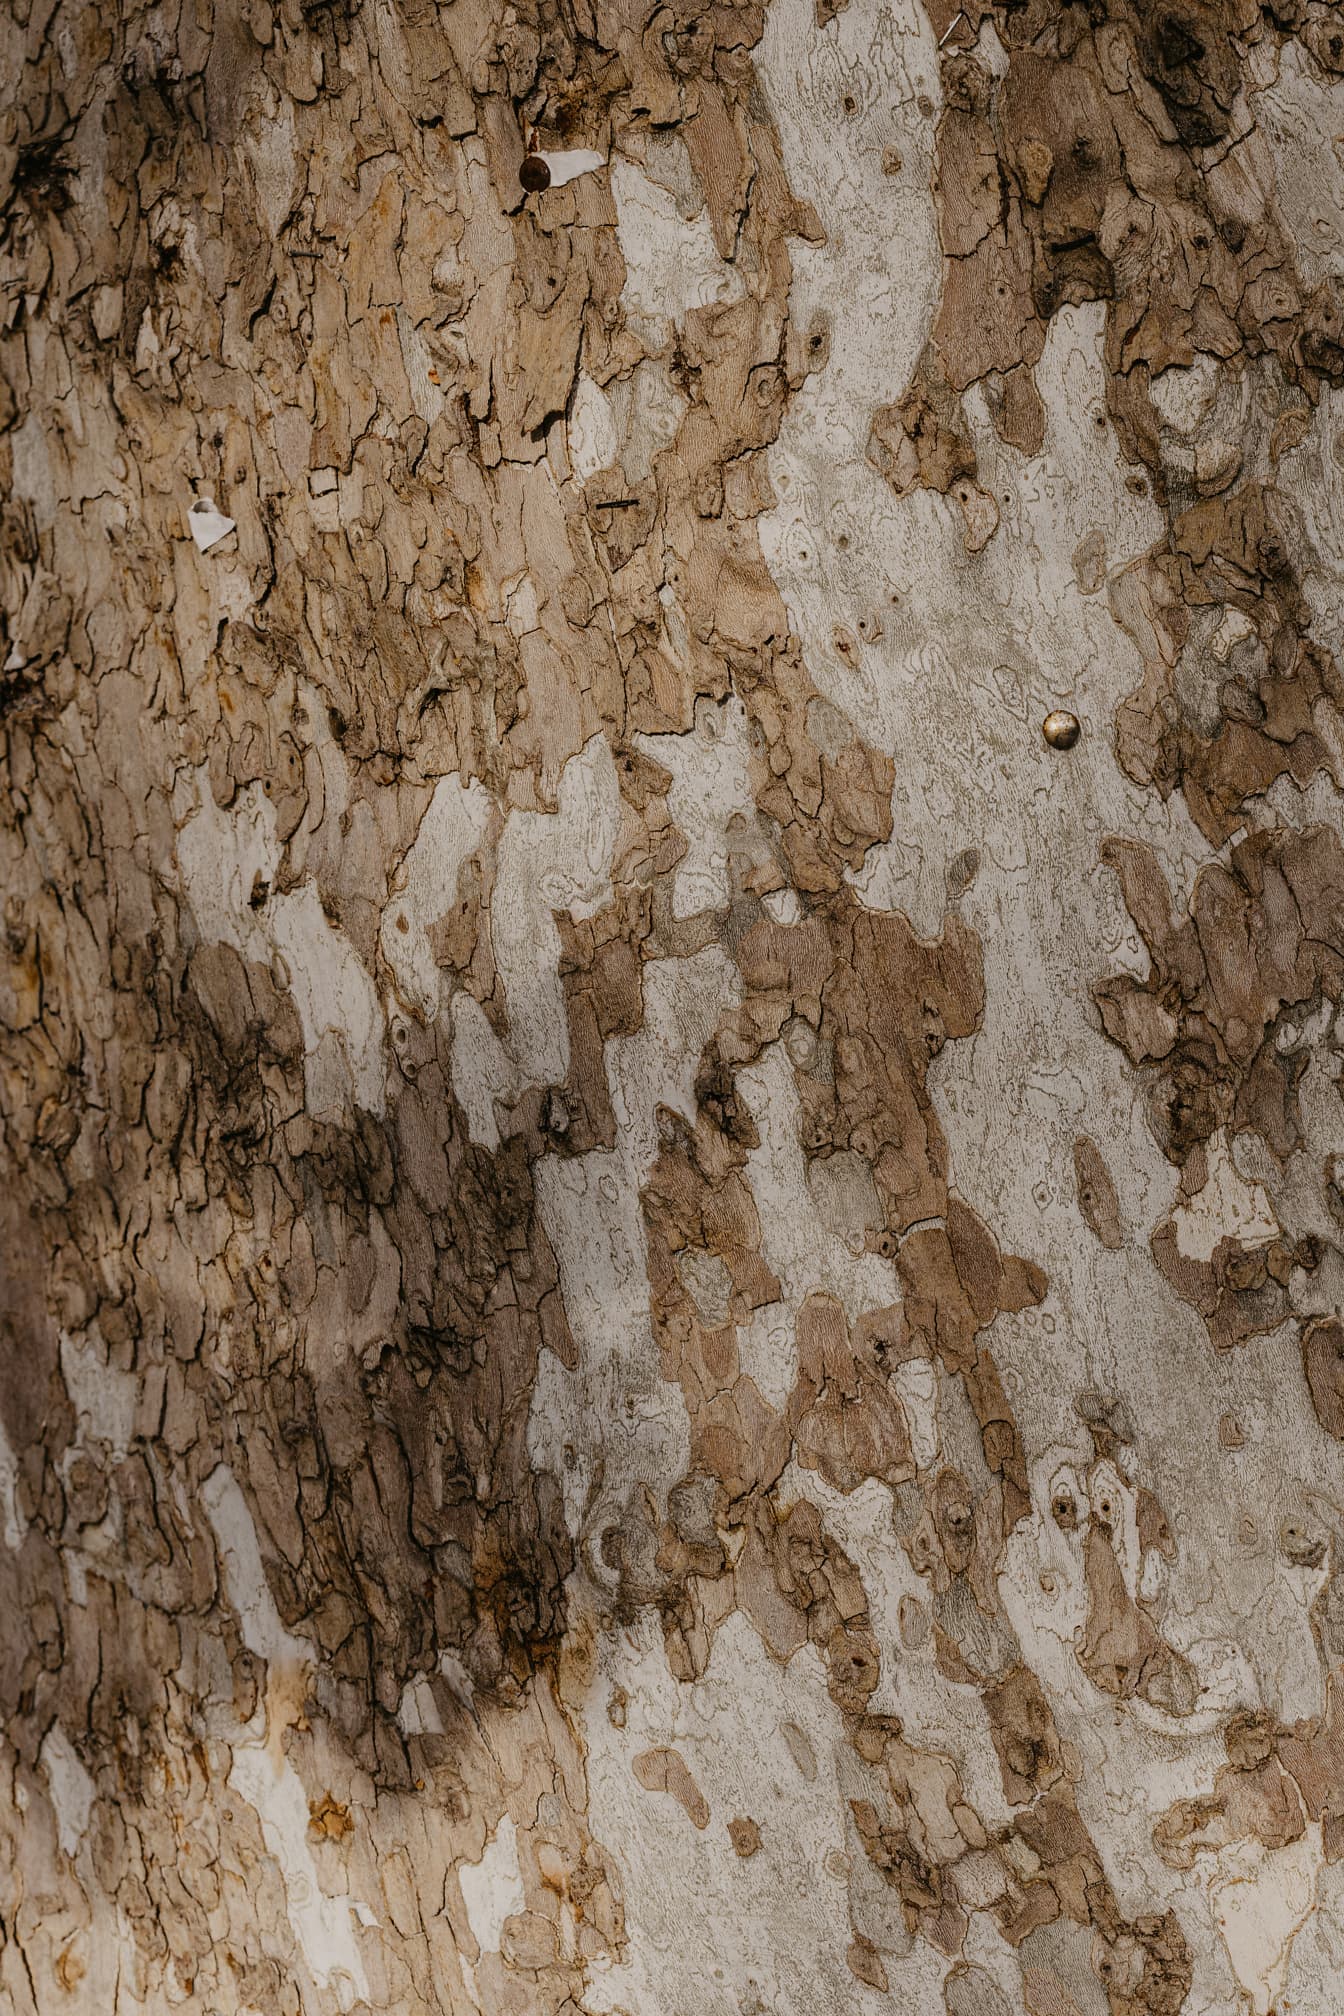 Geelachtige boomstam met het patroon van de schorsclose-up